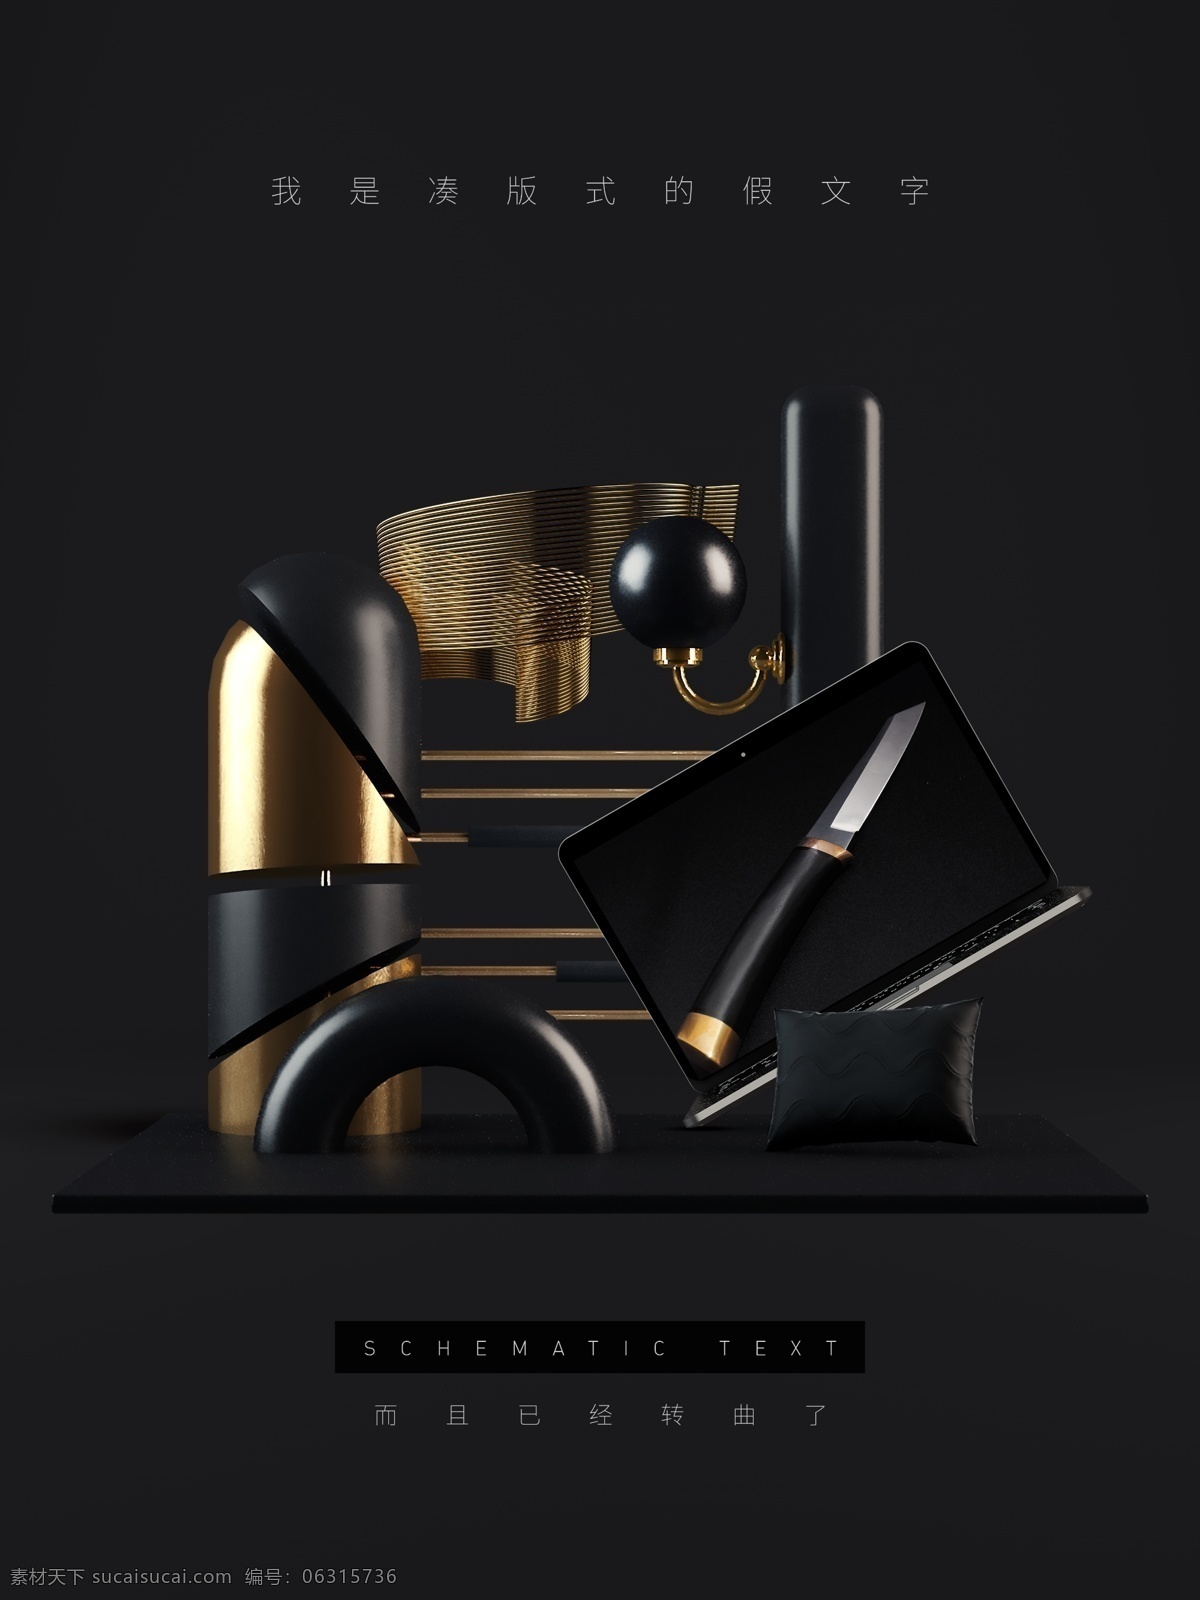 3d 静物 创意 几何体 产品 陈列 海报 黑金 立体 黑色 金色 三维 文艺 高贵 简洁 c4d 材质 质感 金属